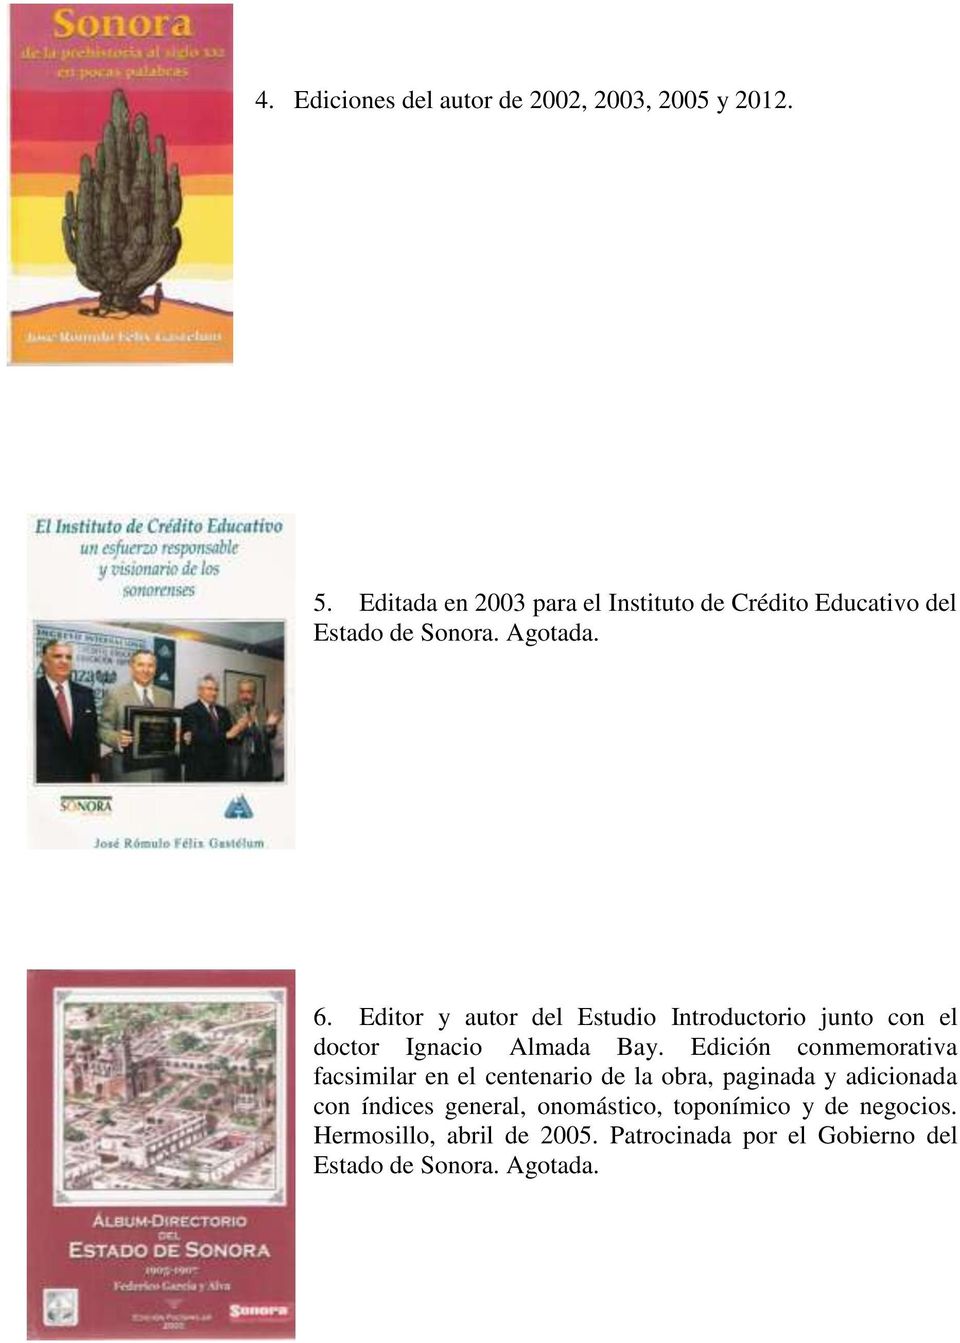 Editor y autor del Estudio Introductorio junto con el doctor Ignacio Almada Bay.